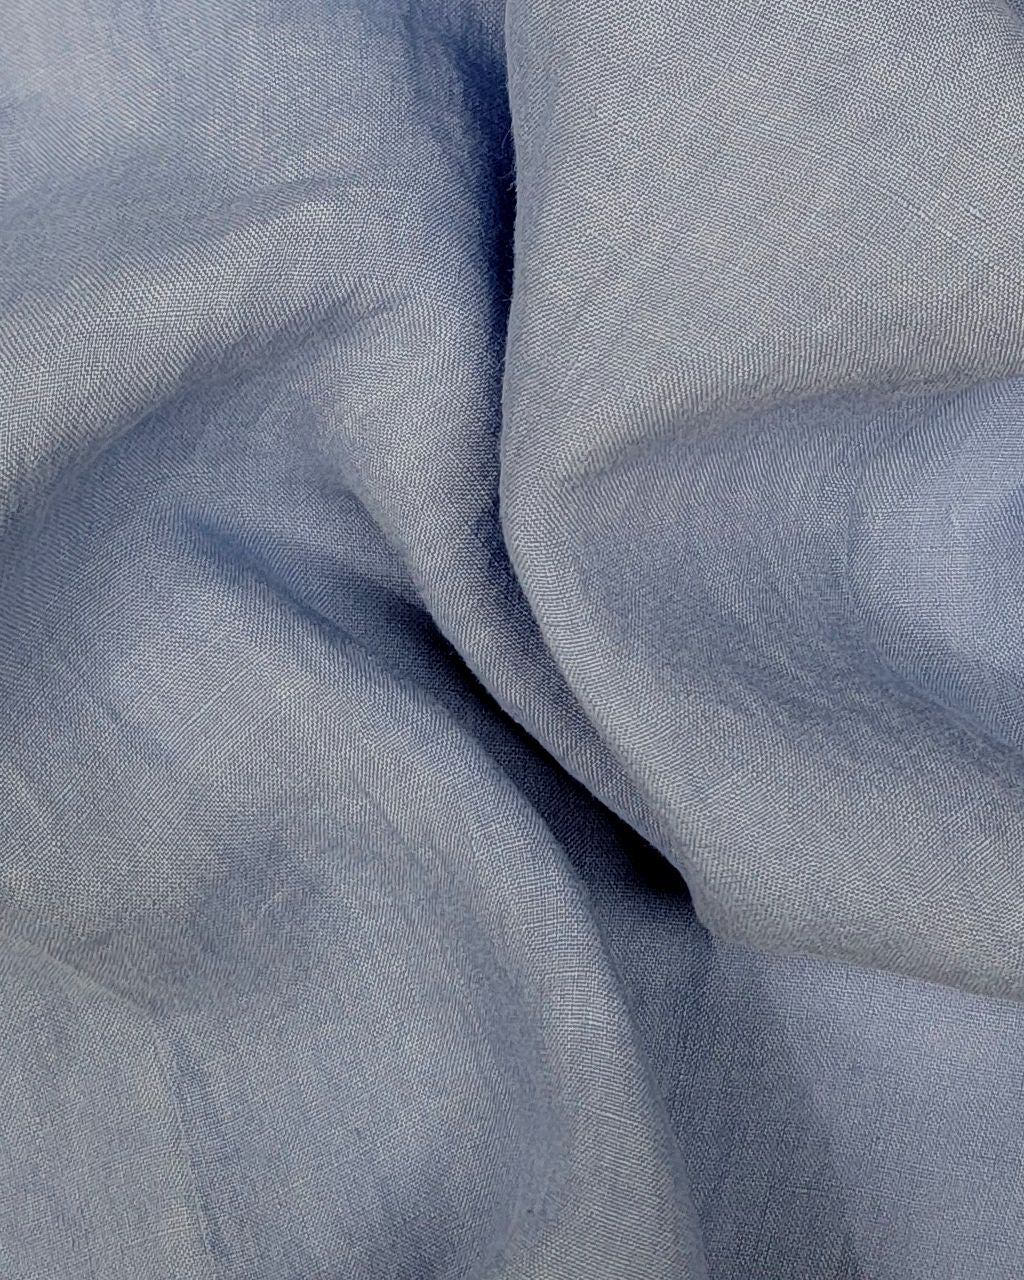 Ferrante Camicia Linen Button Up in Blue